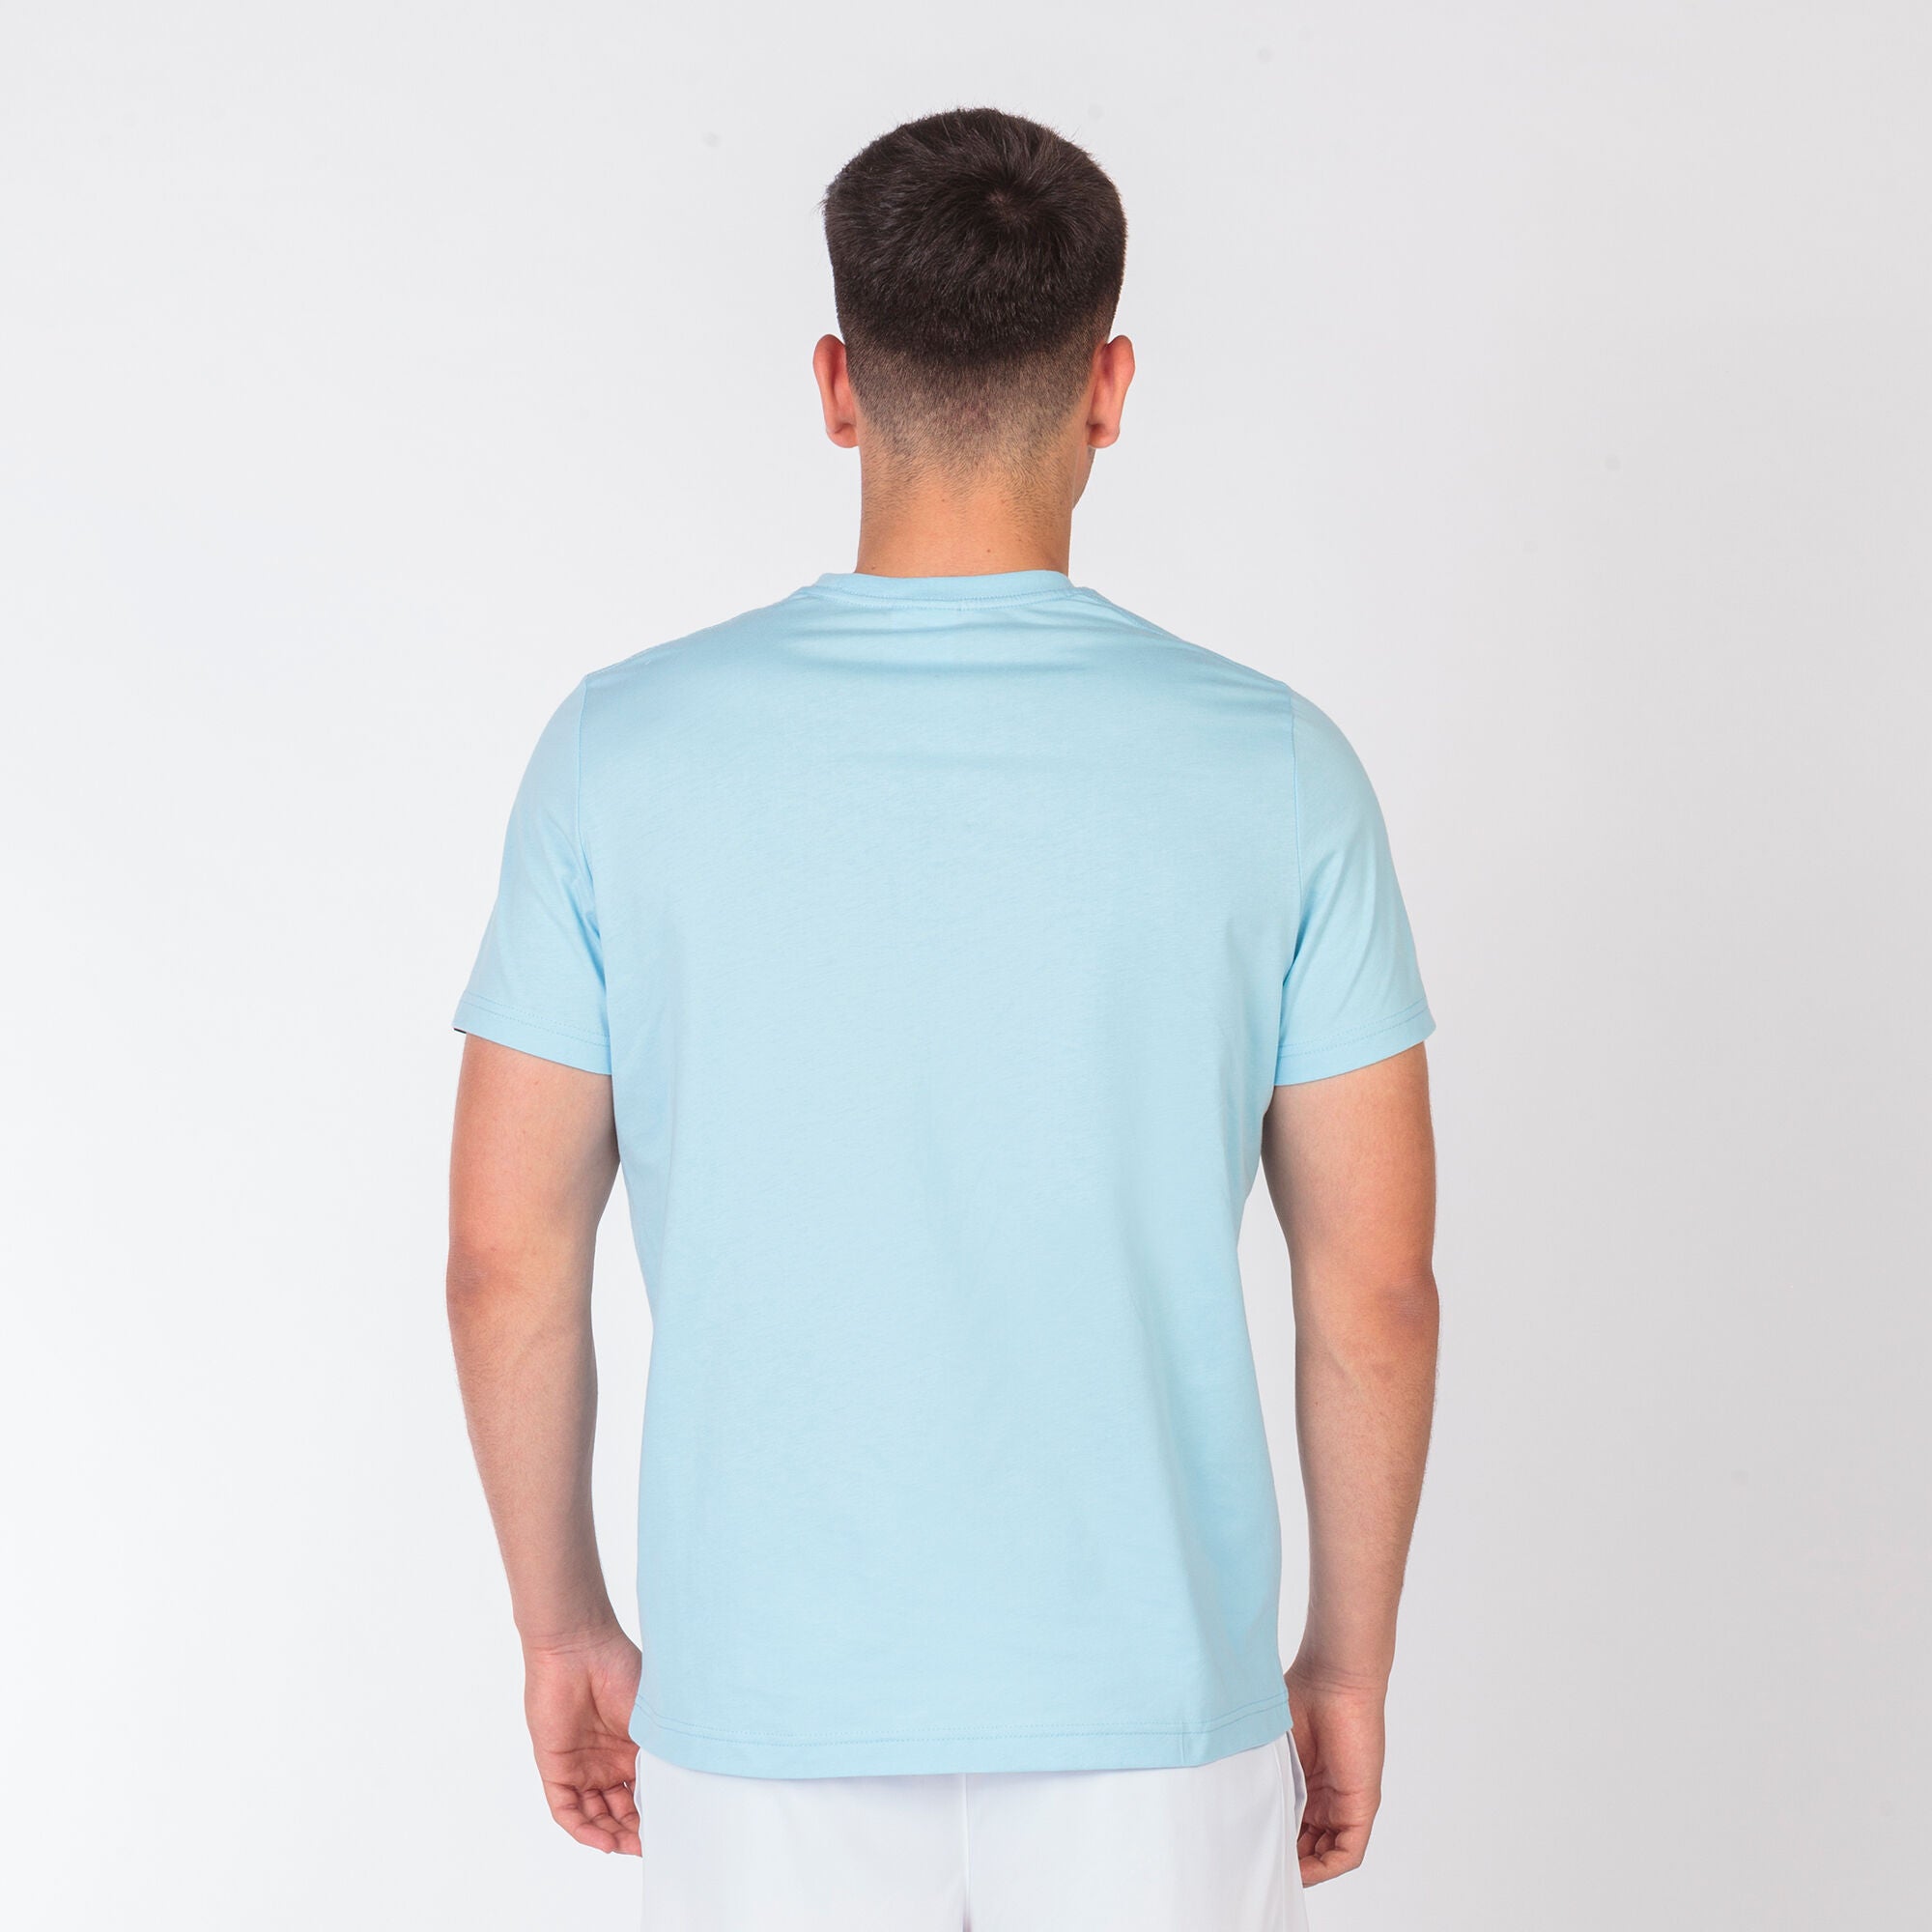 Joma Desert Plain Round Neck T-shirt Men's-2359-Sky Blue